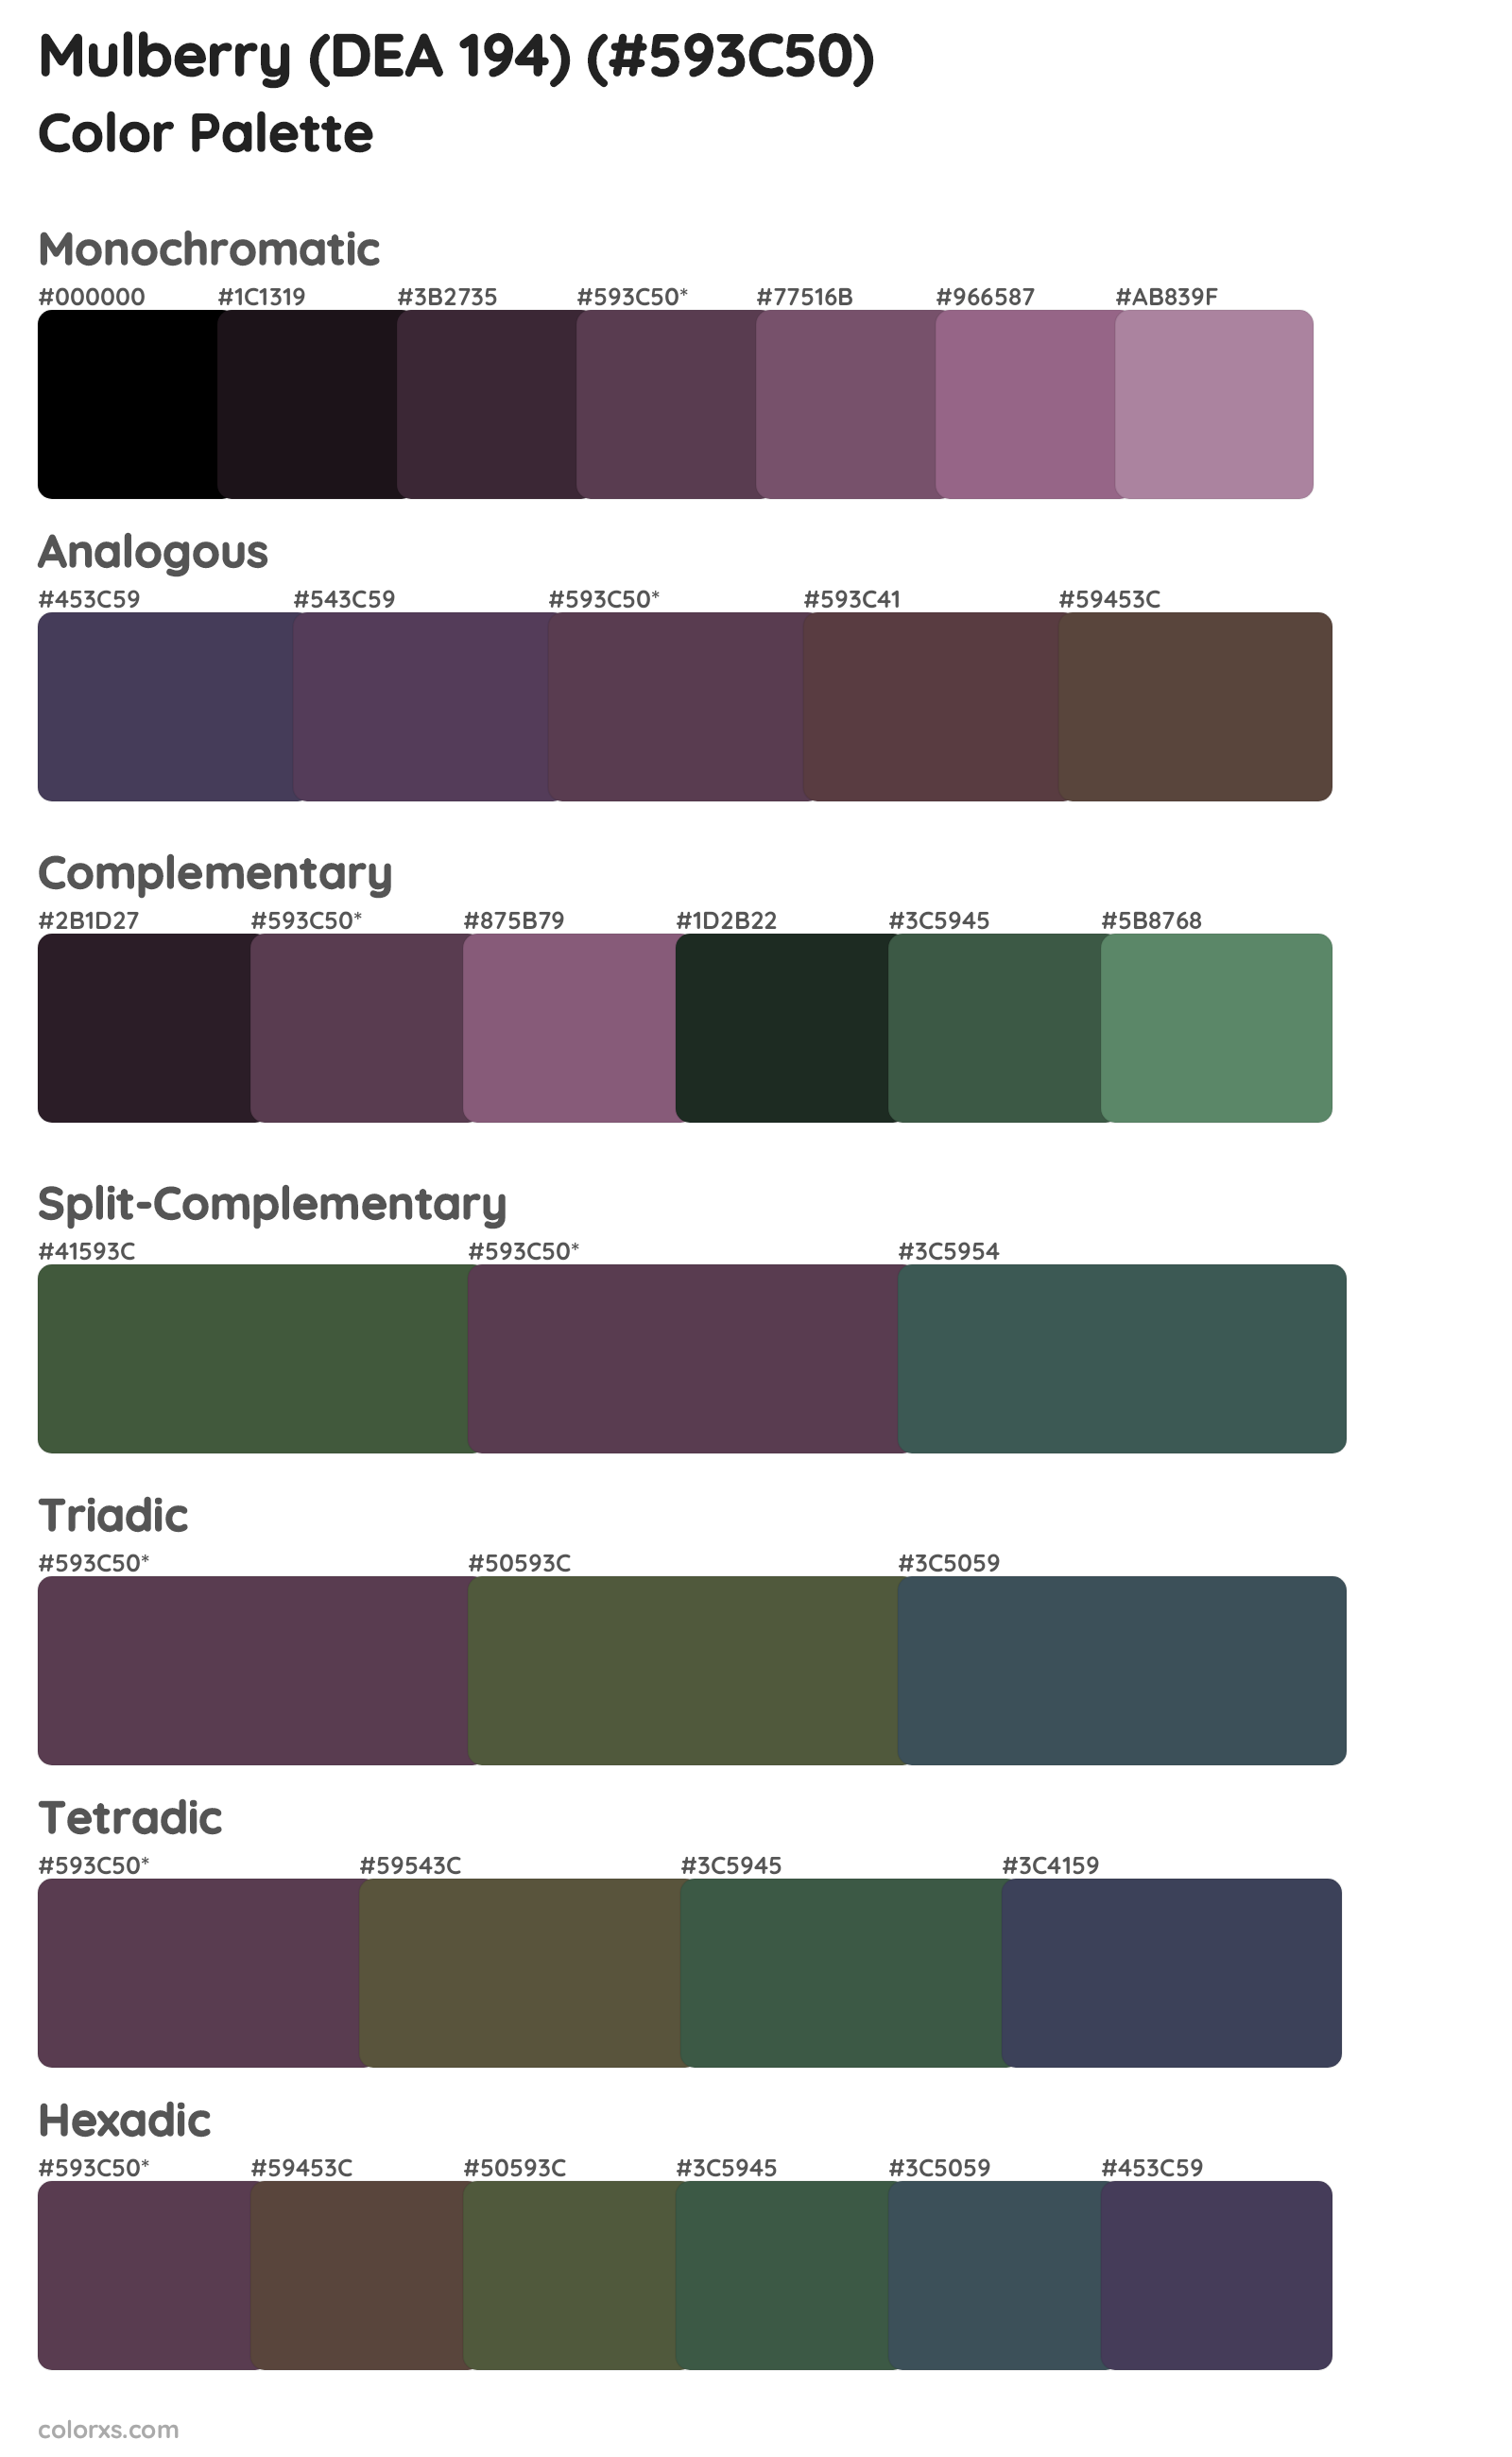 Mulberry (DEA 194) Color Scheme Palettes